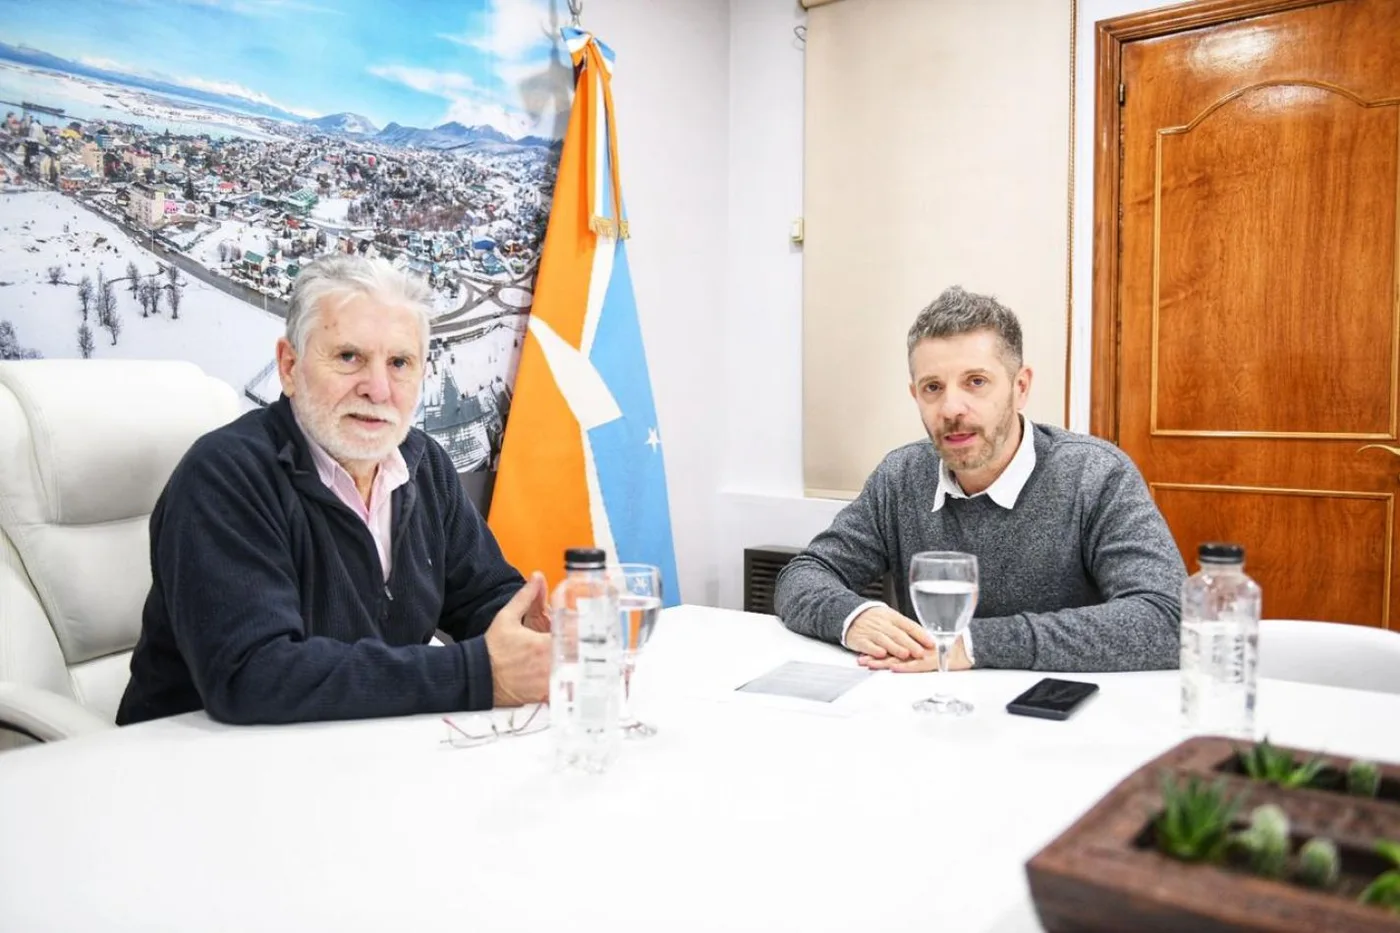 El jefe de Gabinete de la Municipalidad de Ushuaia Oscar Souto recibió en la sede de la Intendencia a su par del Gobierno provincial Leonardo Gorbacz